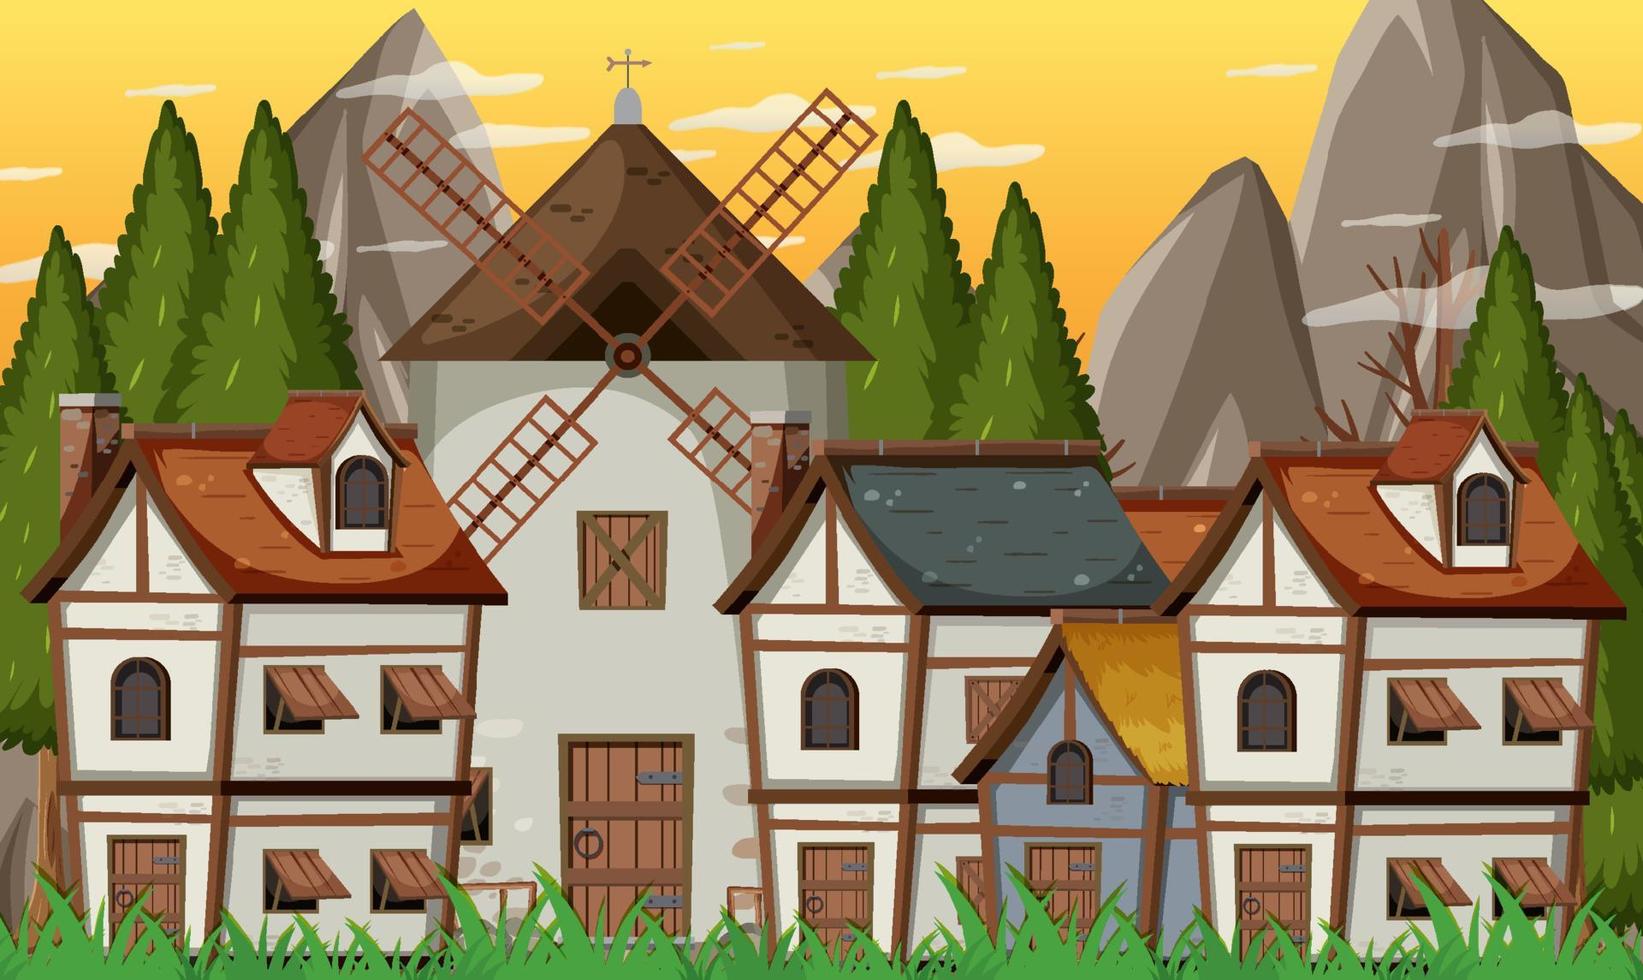 Escena de pueblo medieval con molino de viento y casas. vector